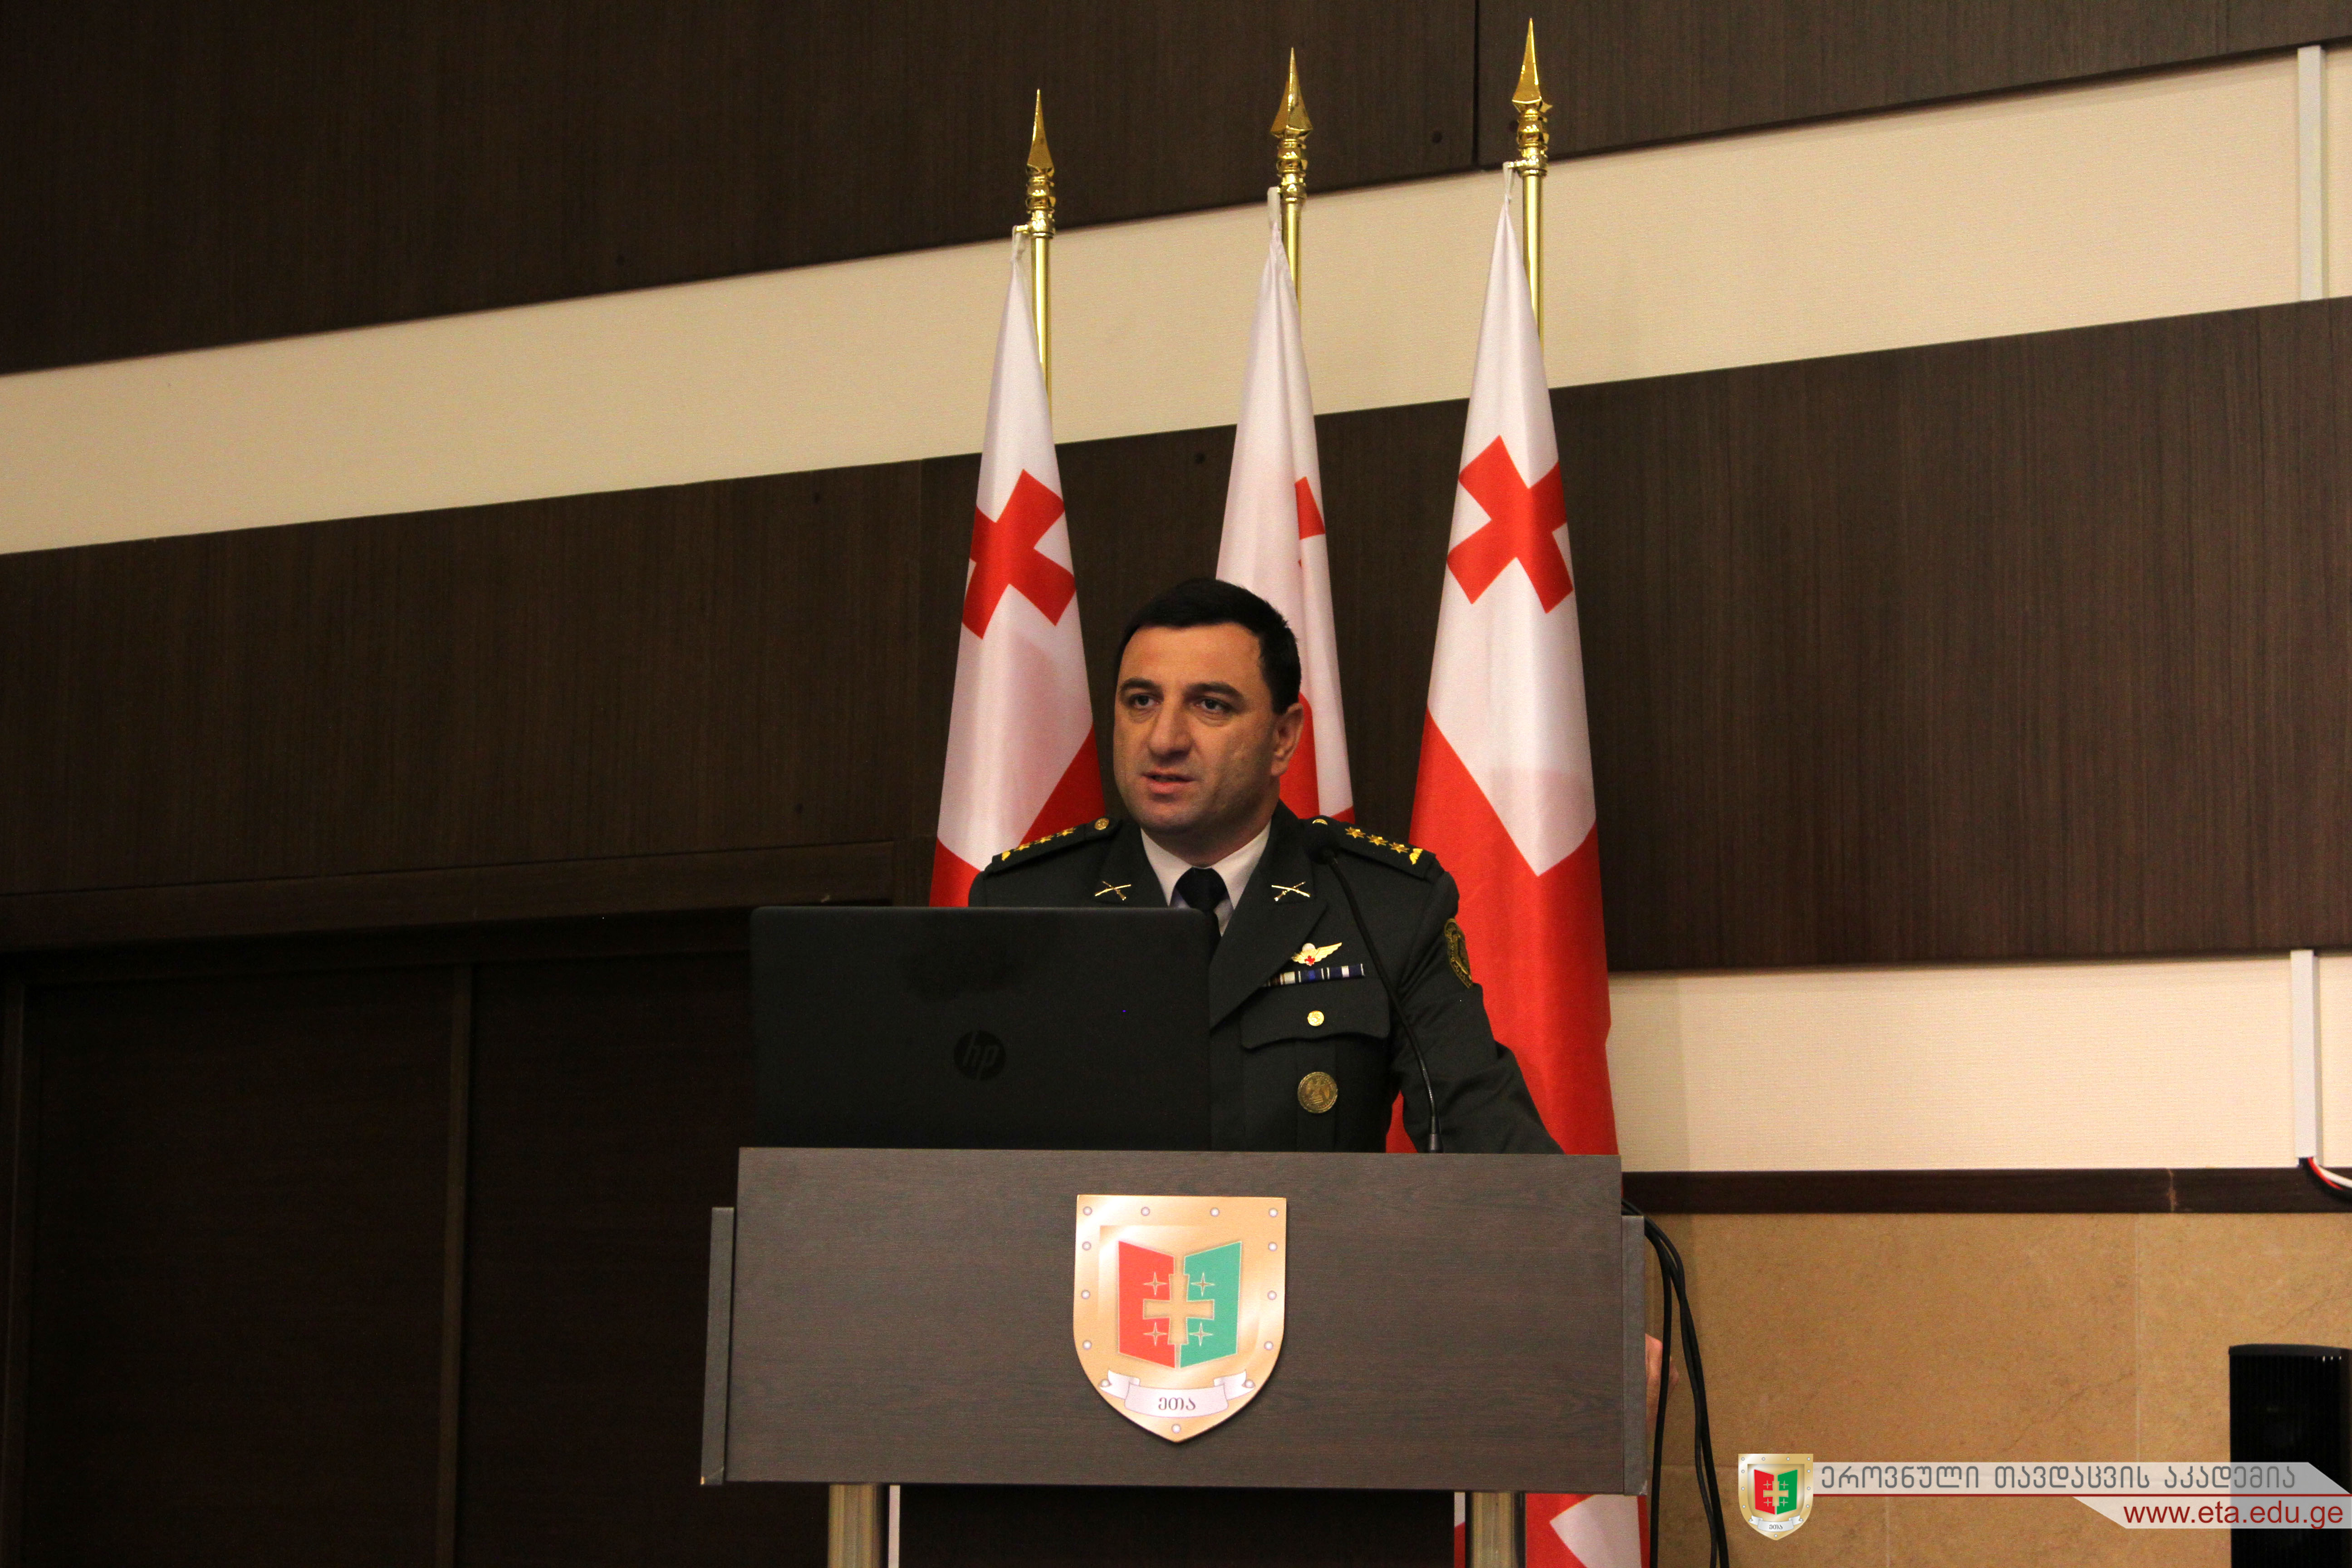 Colonel Giorgi Matiashvili’s Lecture for the NDA Junkers